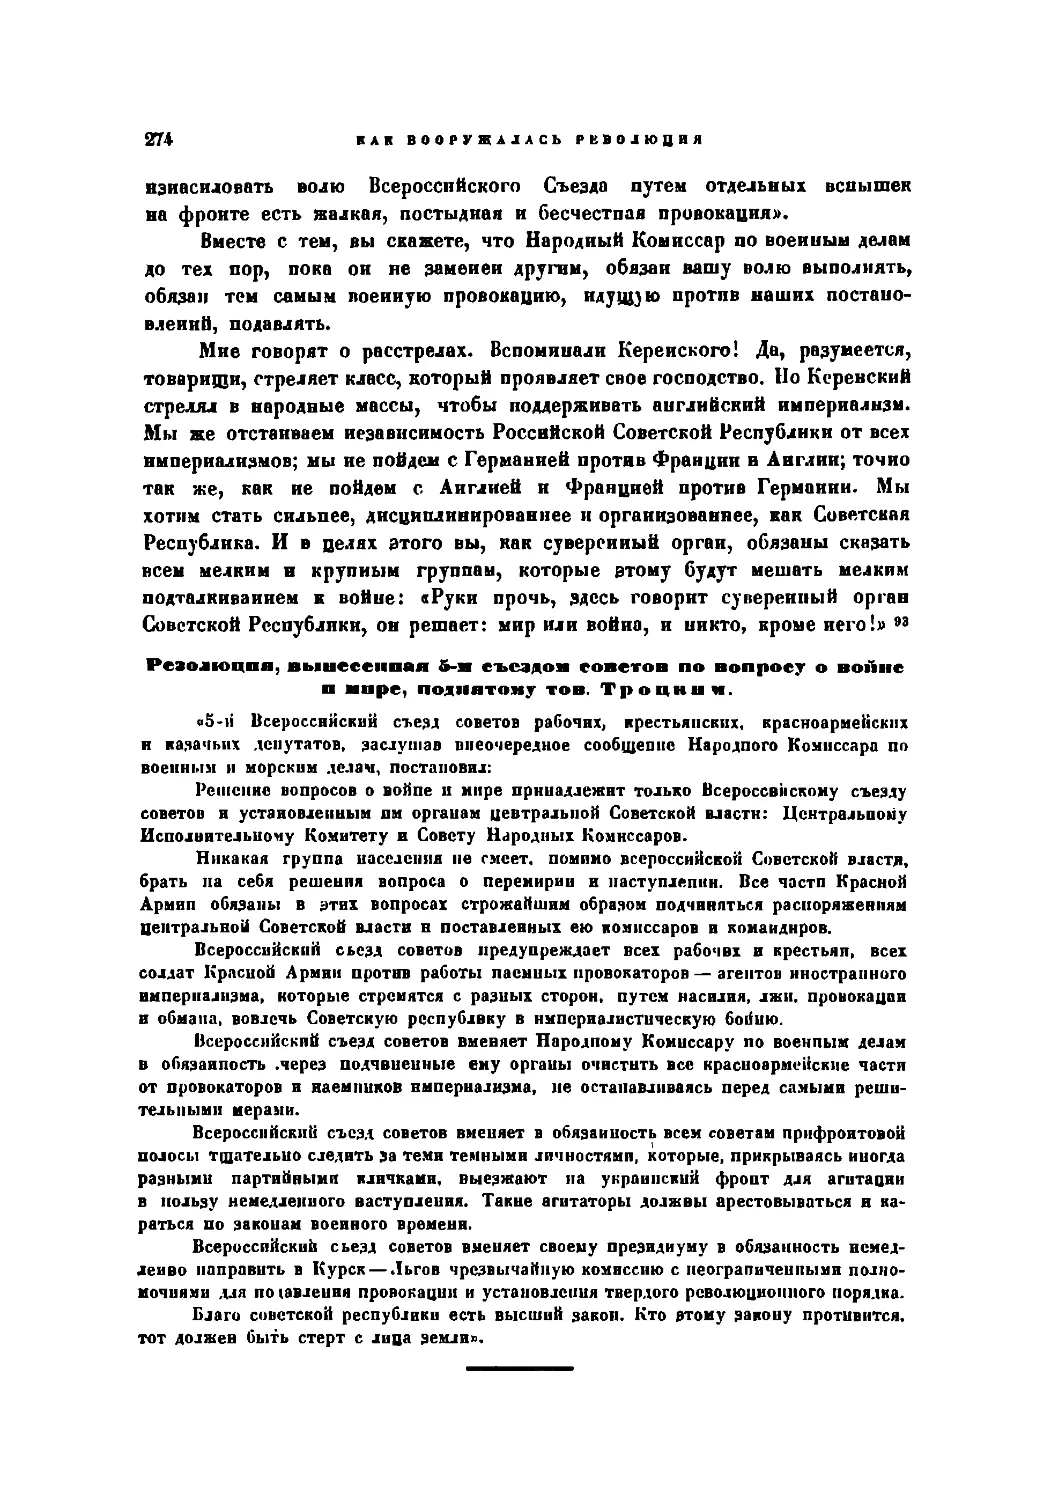 Резолюция по вопросу о войне и мире, принятая 5-м Съездом Советов